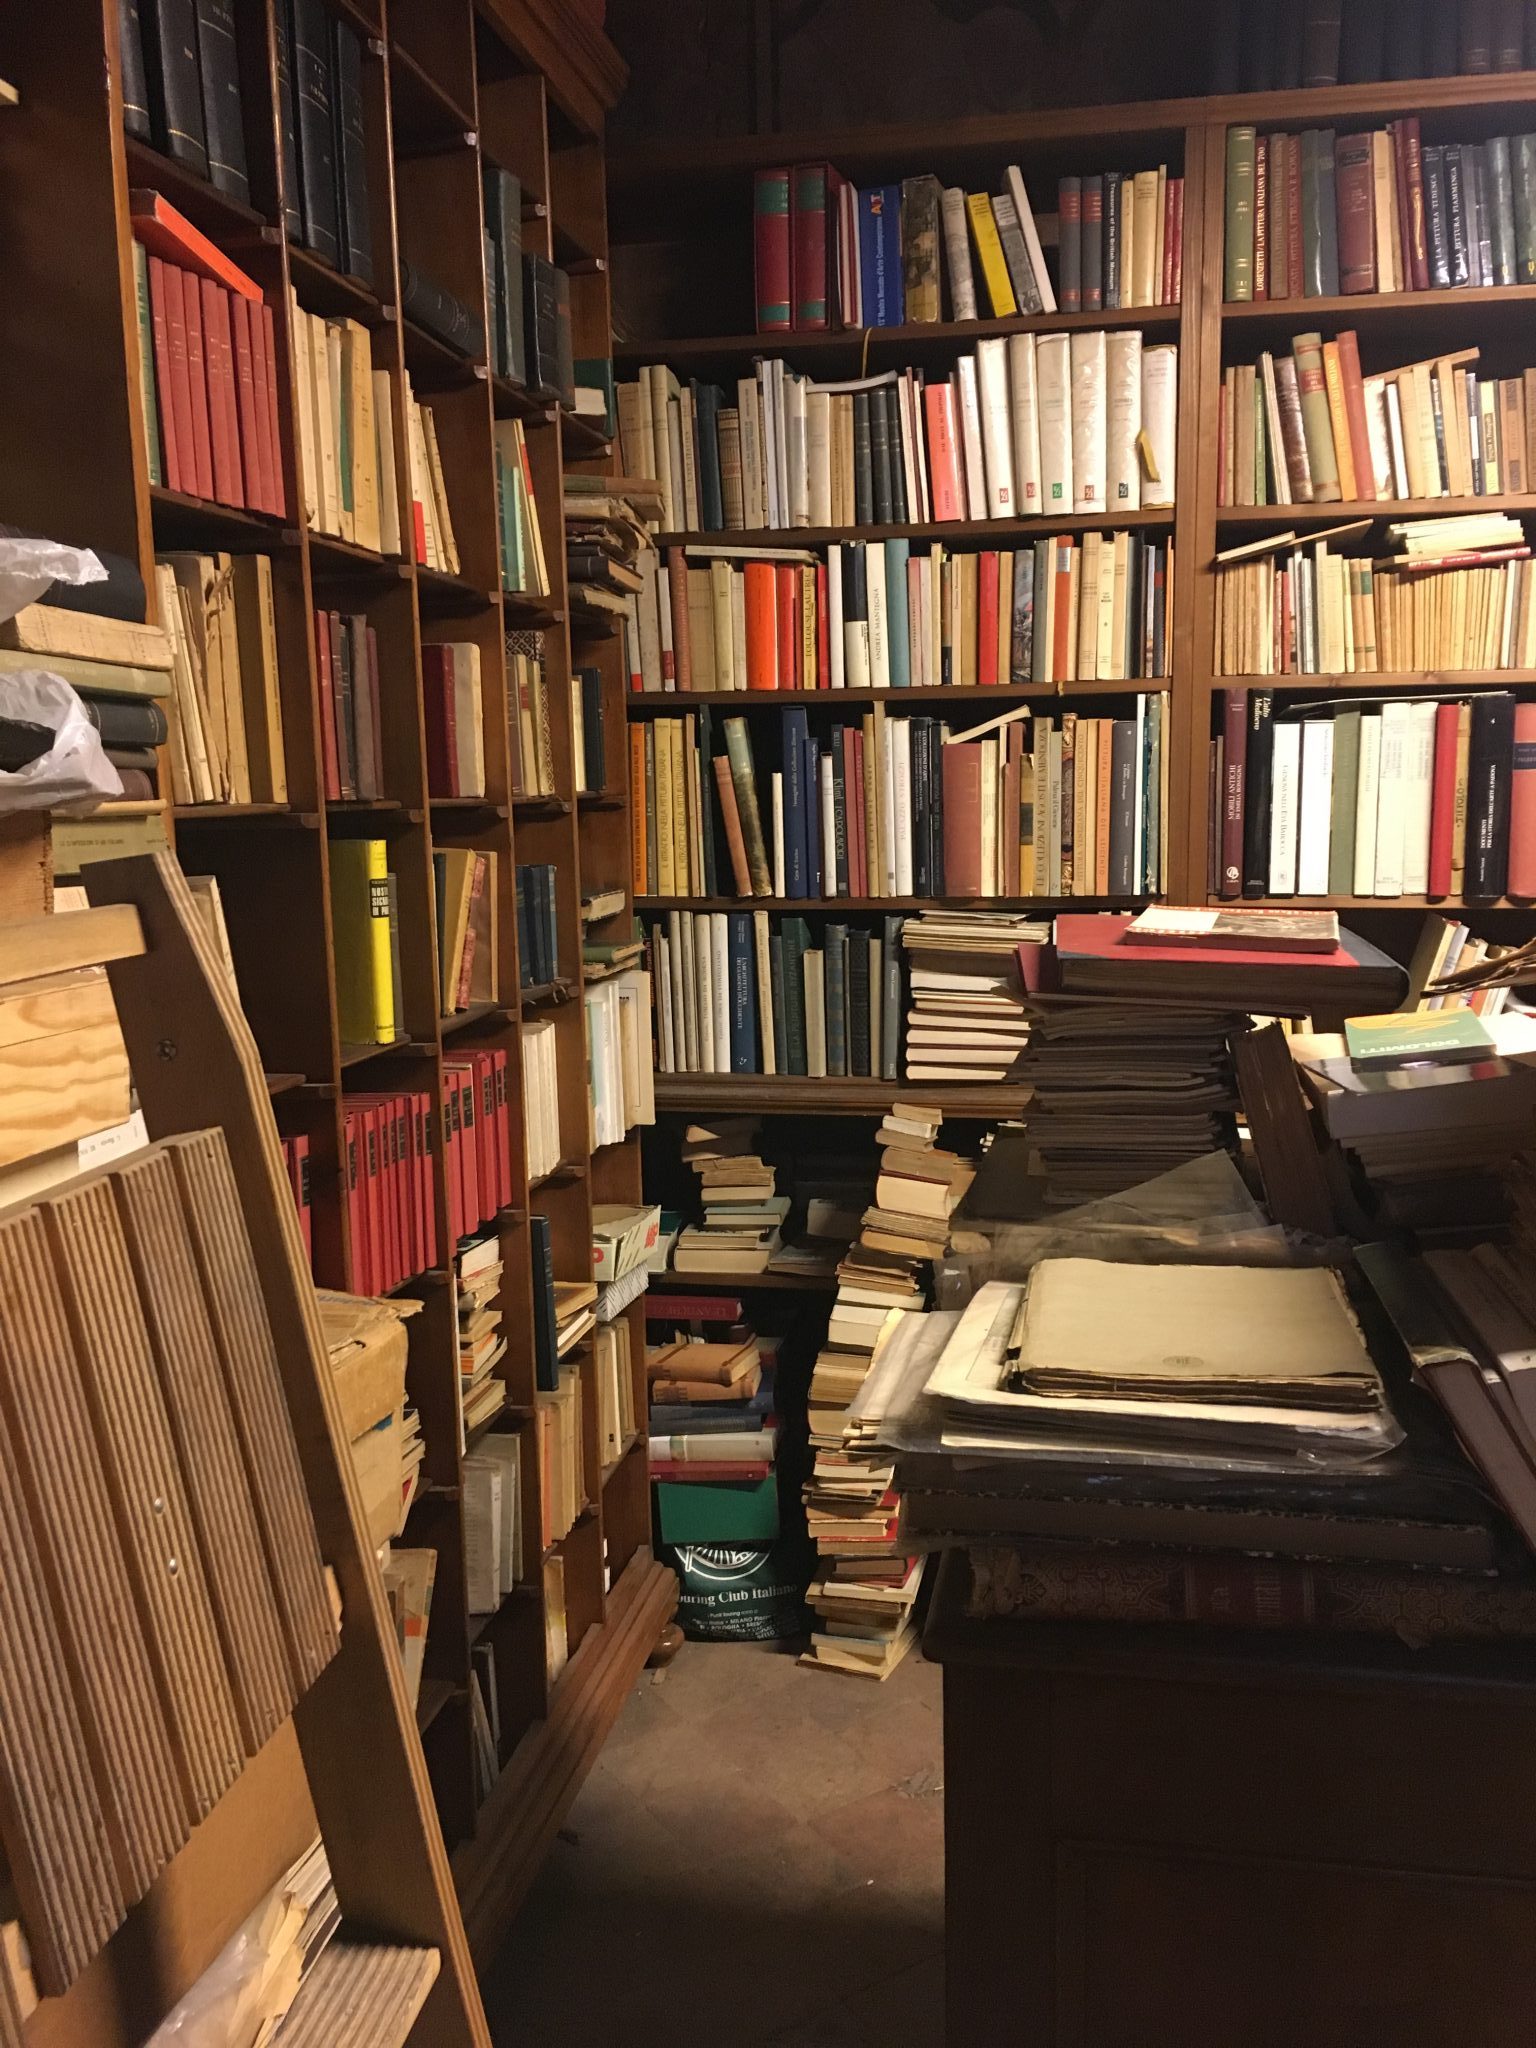 Tre librerie speciali a Padova, dove trascorrere al caldo un pomeriggio d'inverno: La libreria Antiquaria Stella, La libreria delle donne e Laformadellibro.